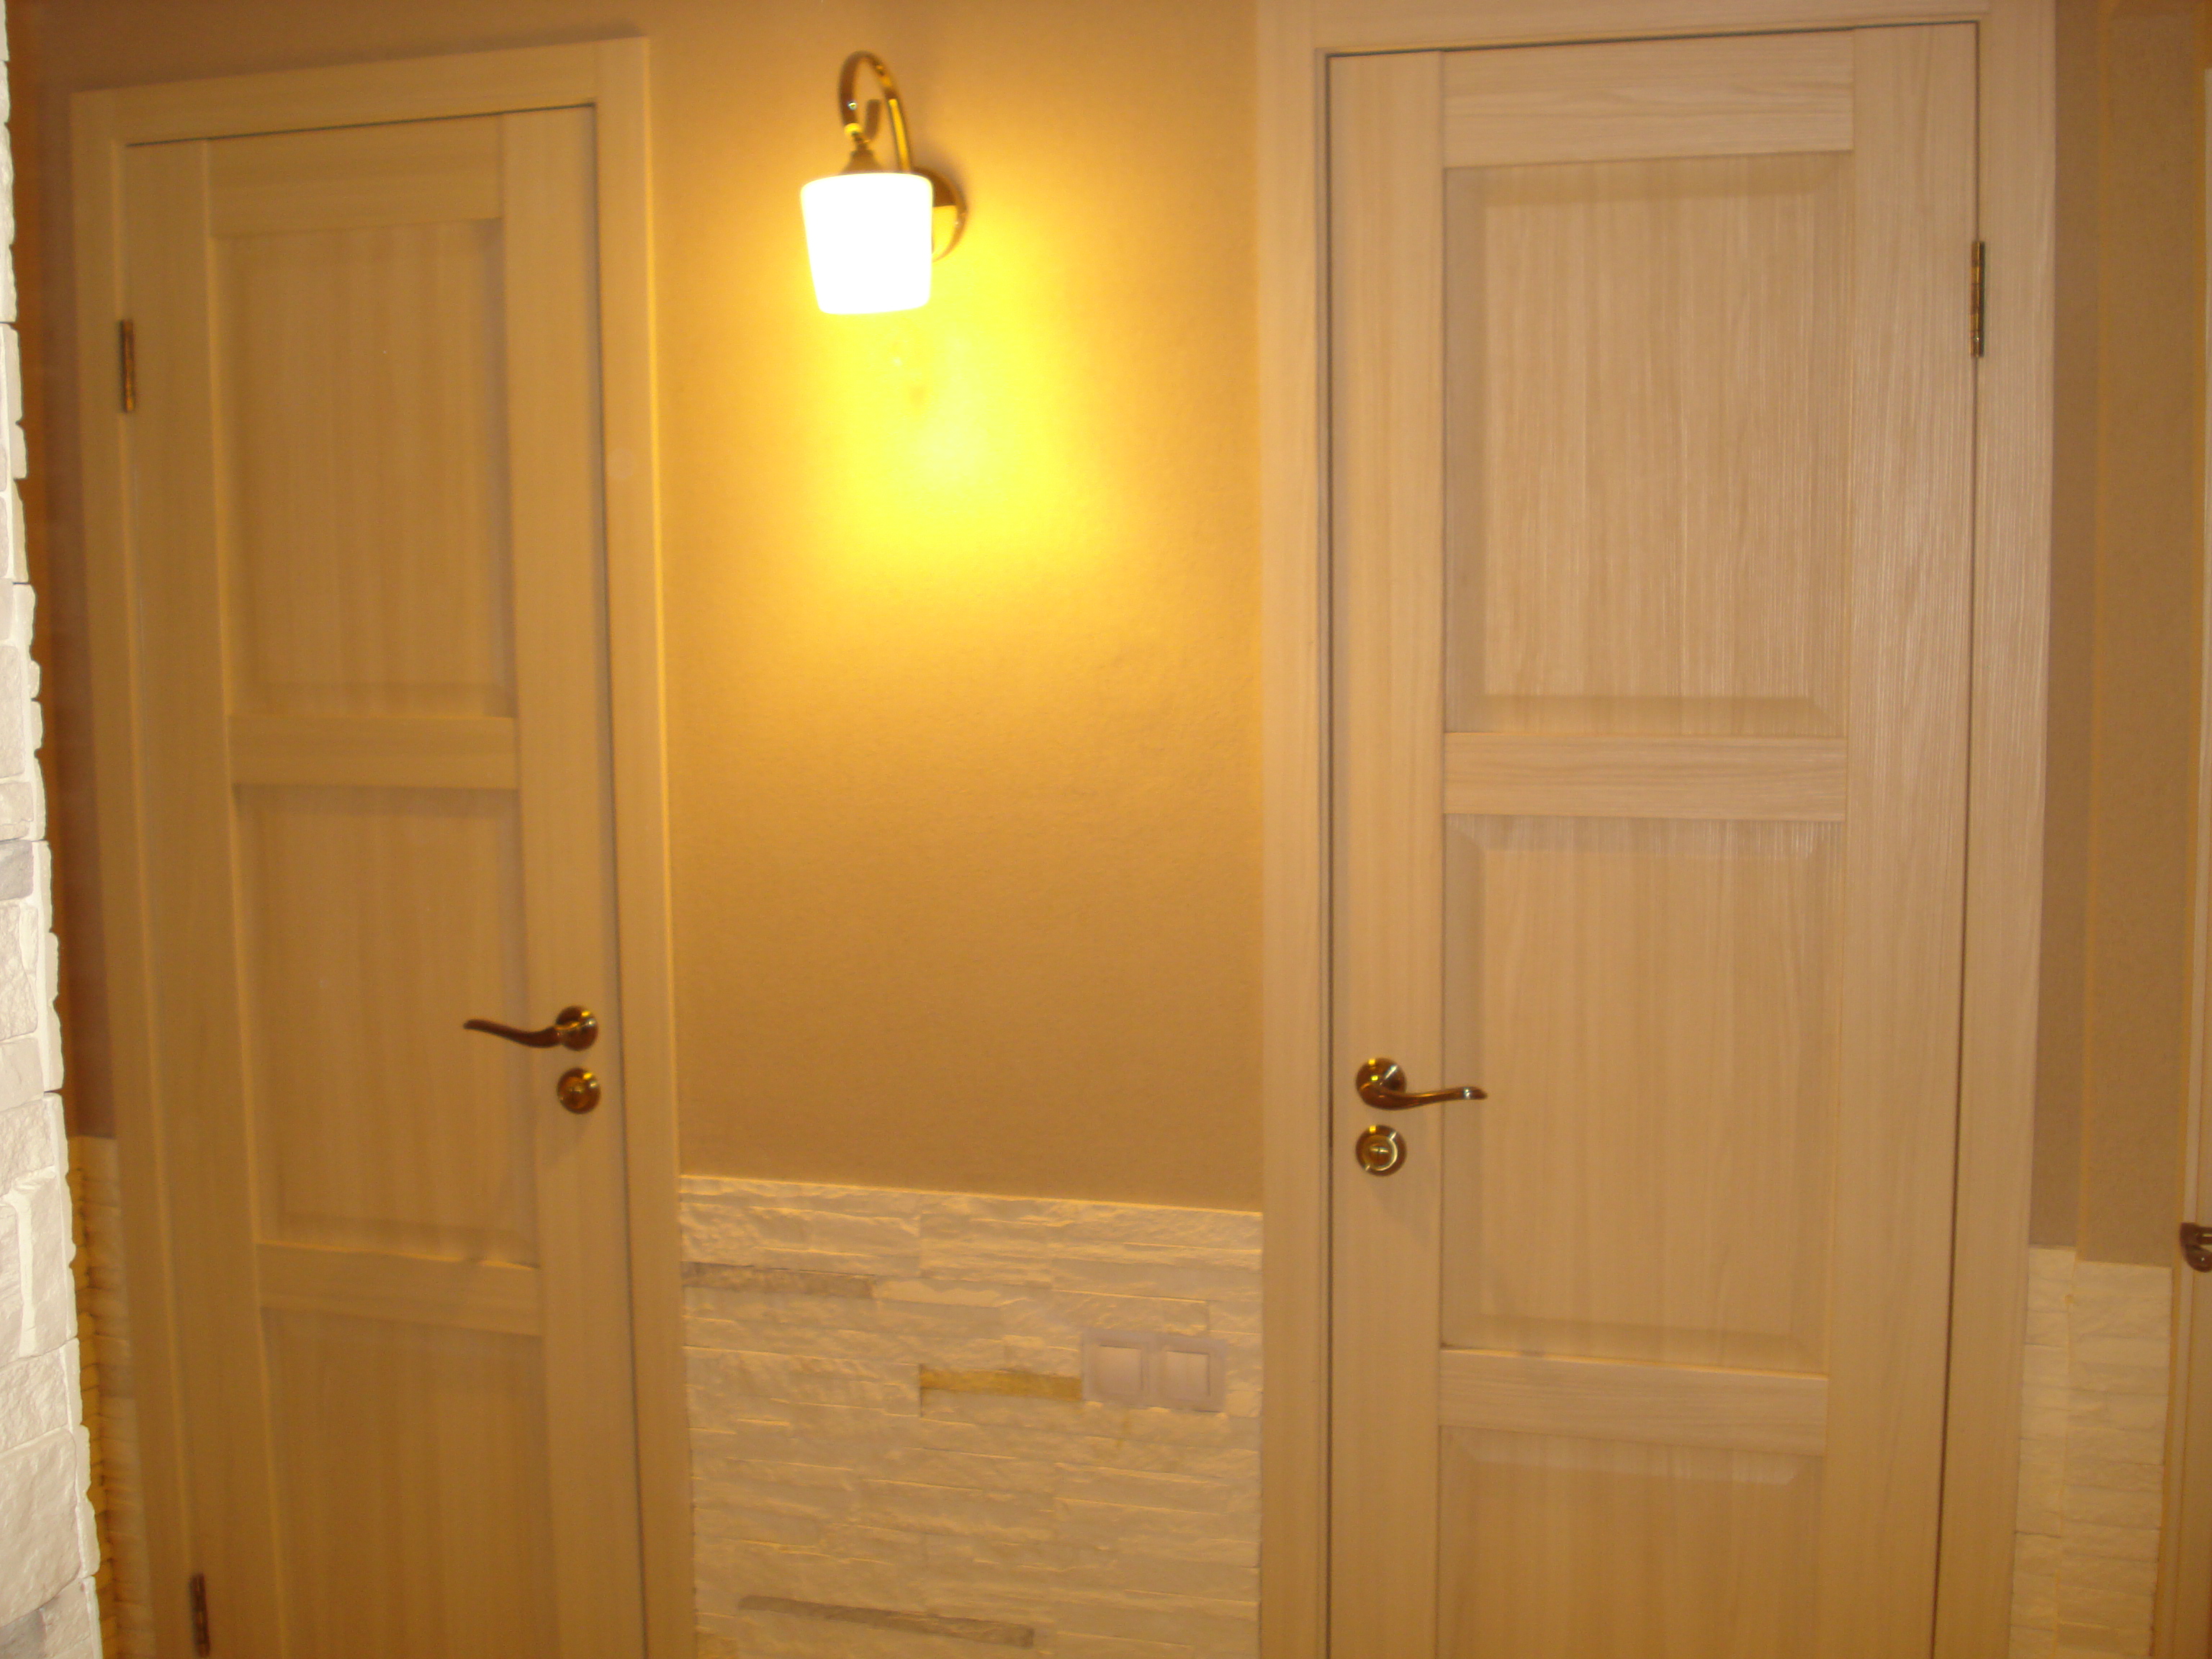 Леруа двери ванная туалет. Деревянная дверь в ванную. Деревянные двери в санузел. Деревянные двери для ванной и туалета. Двери межкомнатные для ванной и туалета.